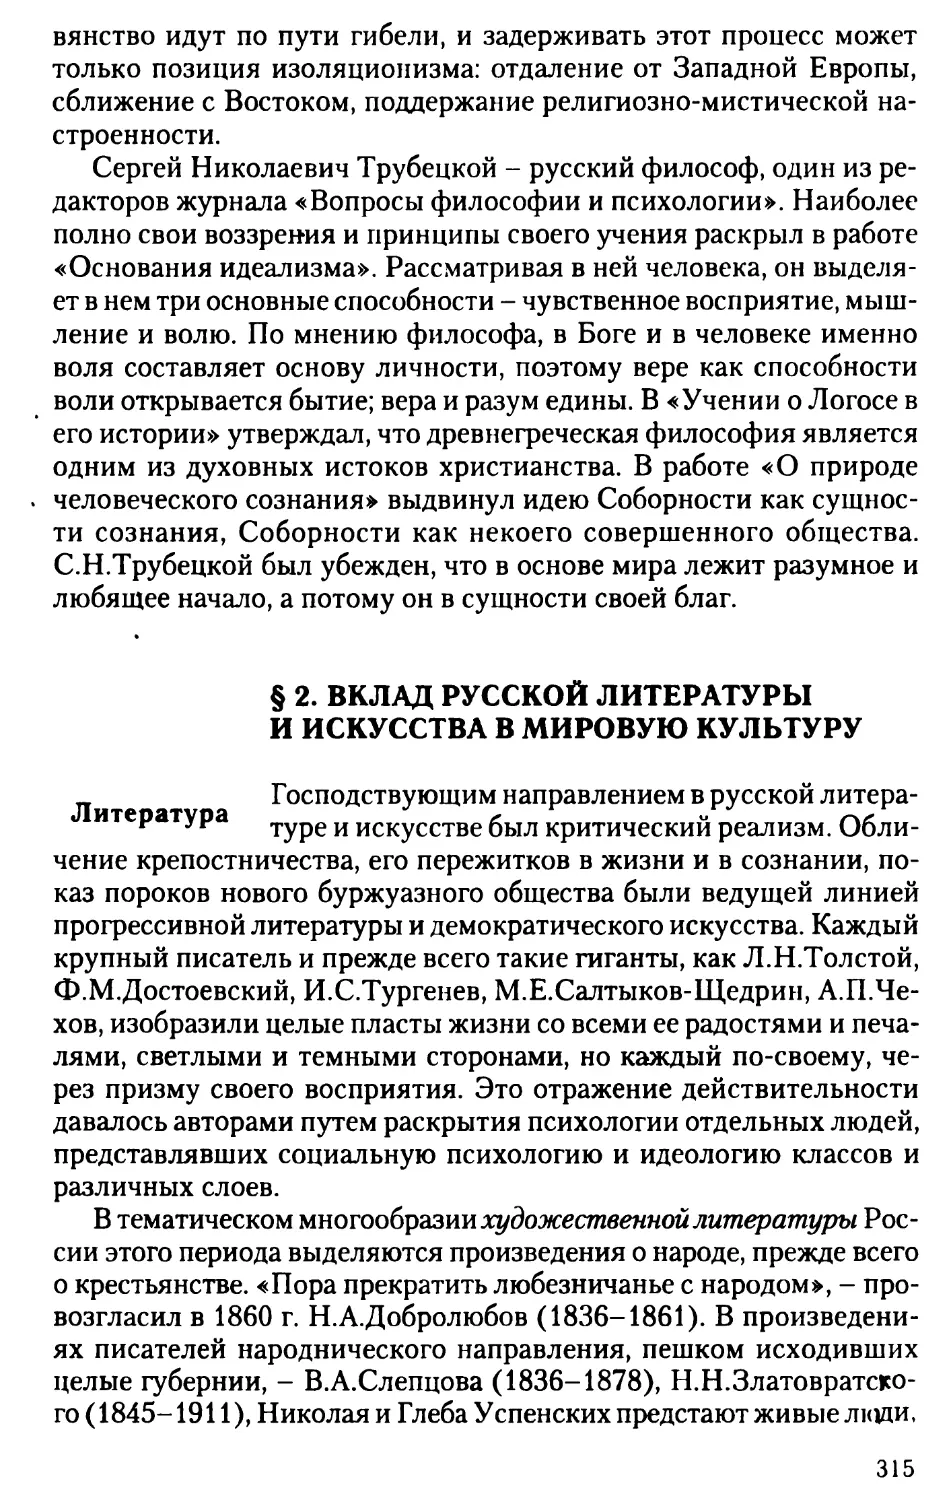 § 2. Вклад русской литературы и искусства в мировую культуру